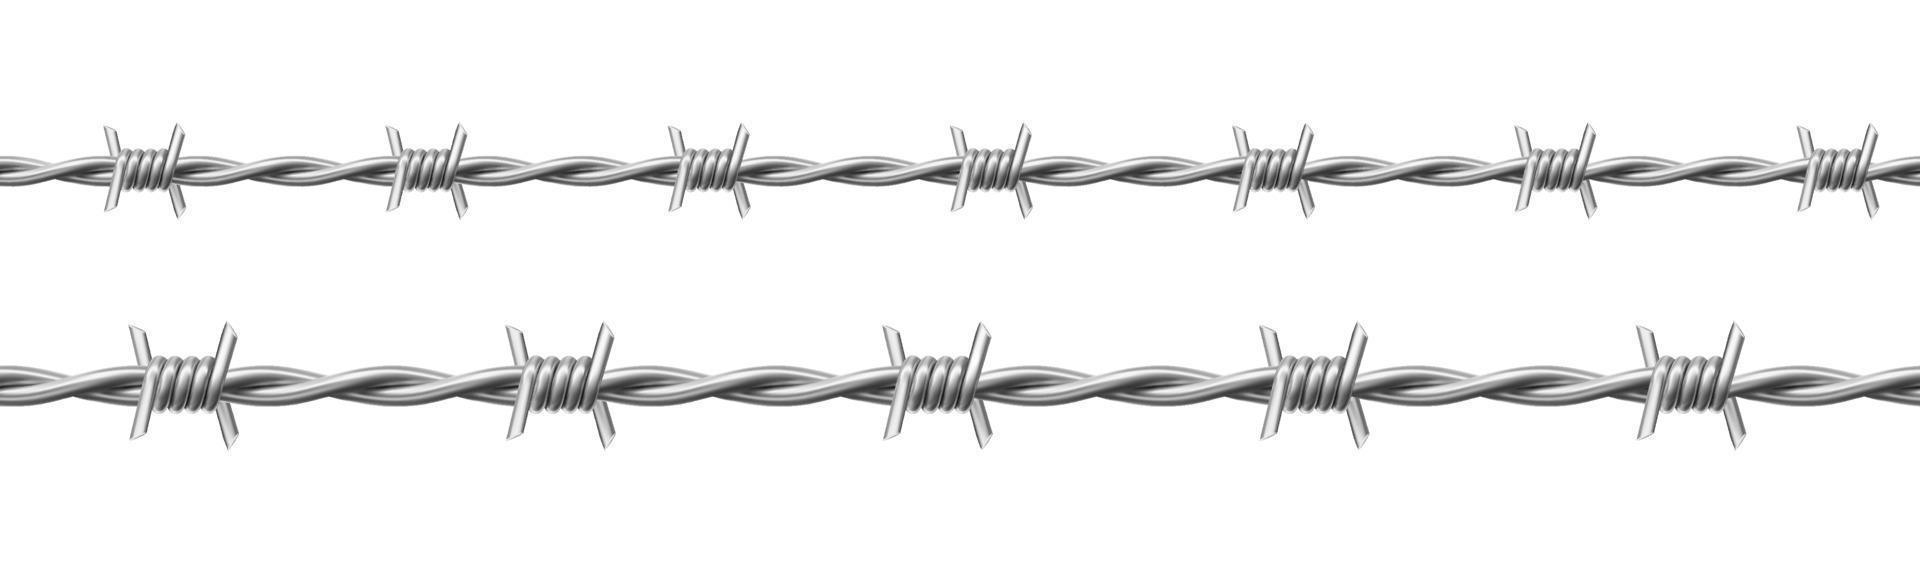 stål taggtråd uppsättning, vriden tråd med taggar vektor